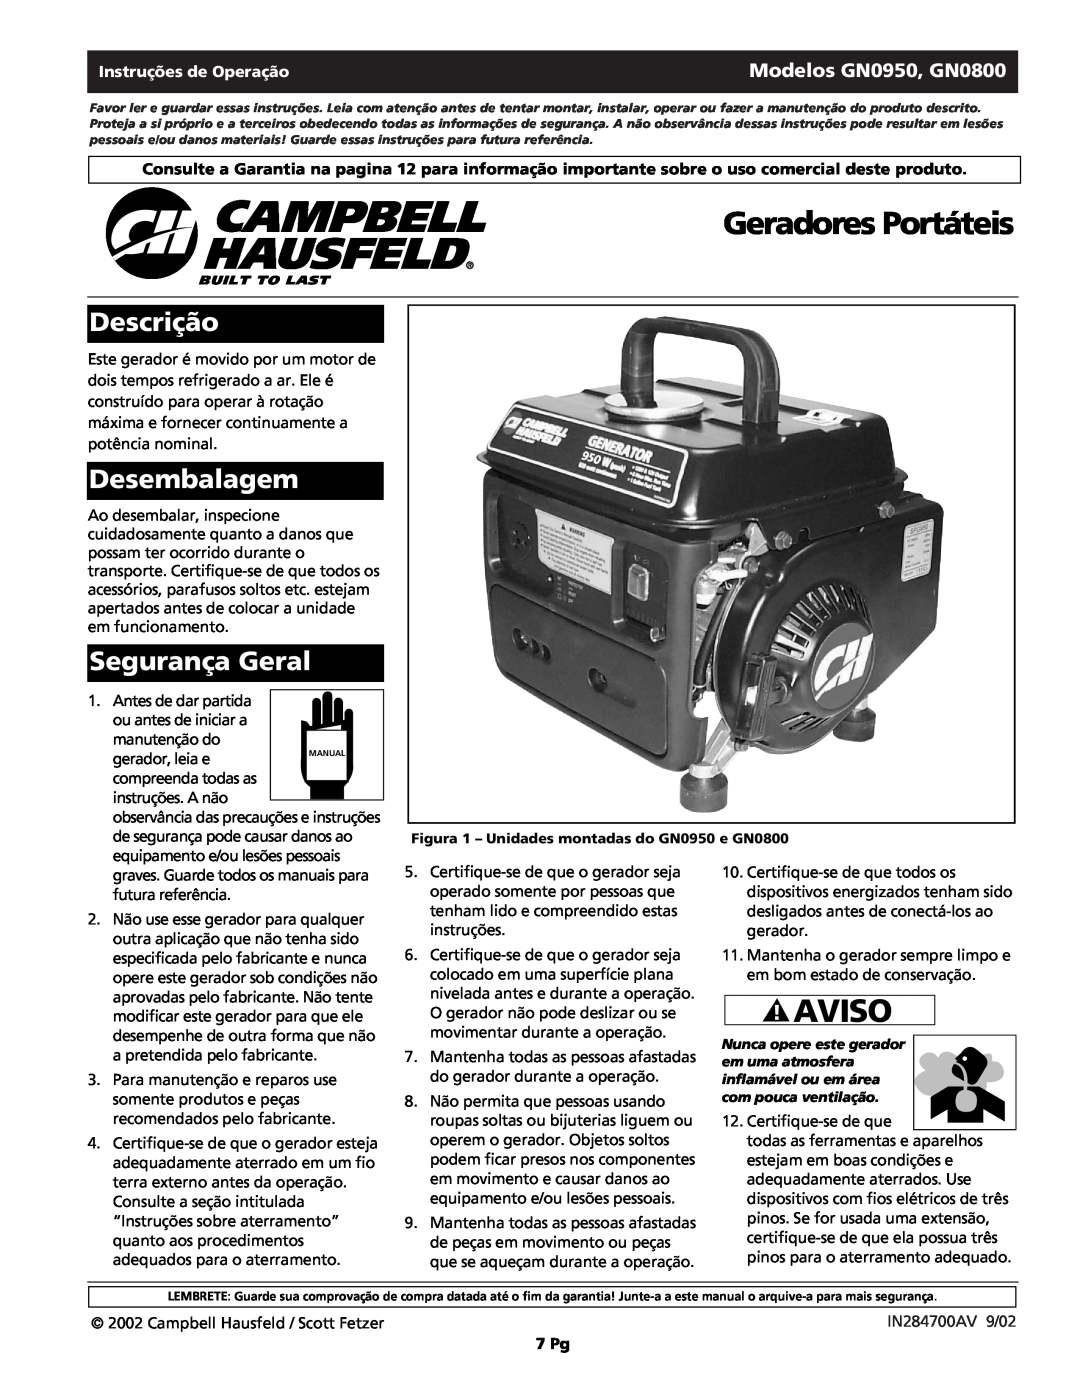 Campbell Hausfeld warranty Geradores Portáteis, Aviso, Descrição, Desembalagem, Segurança Geral, Modelos GN0950, GN0800 